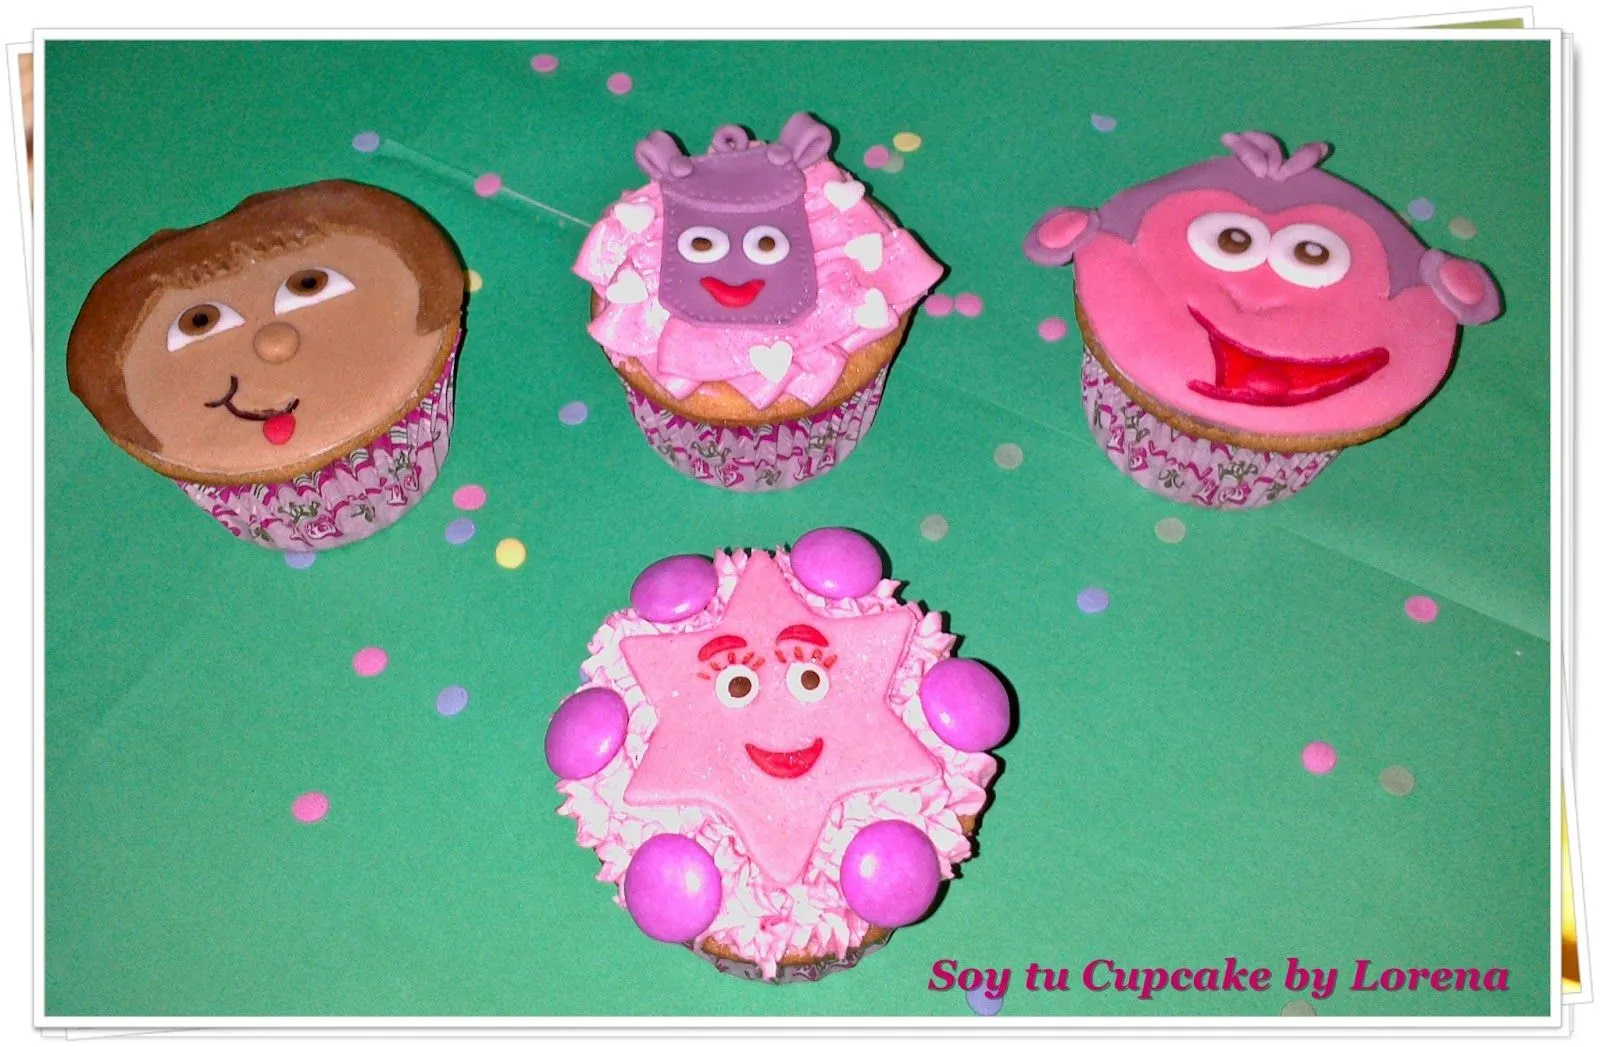 Soy tu Cupcake by Lorena : Cupcakes personajes animados